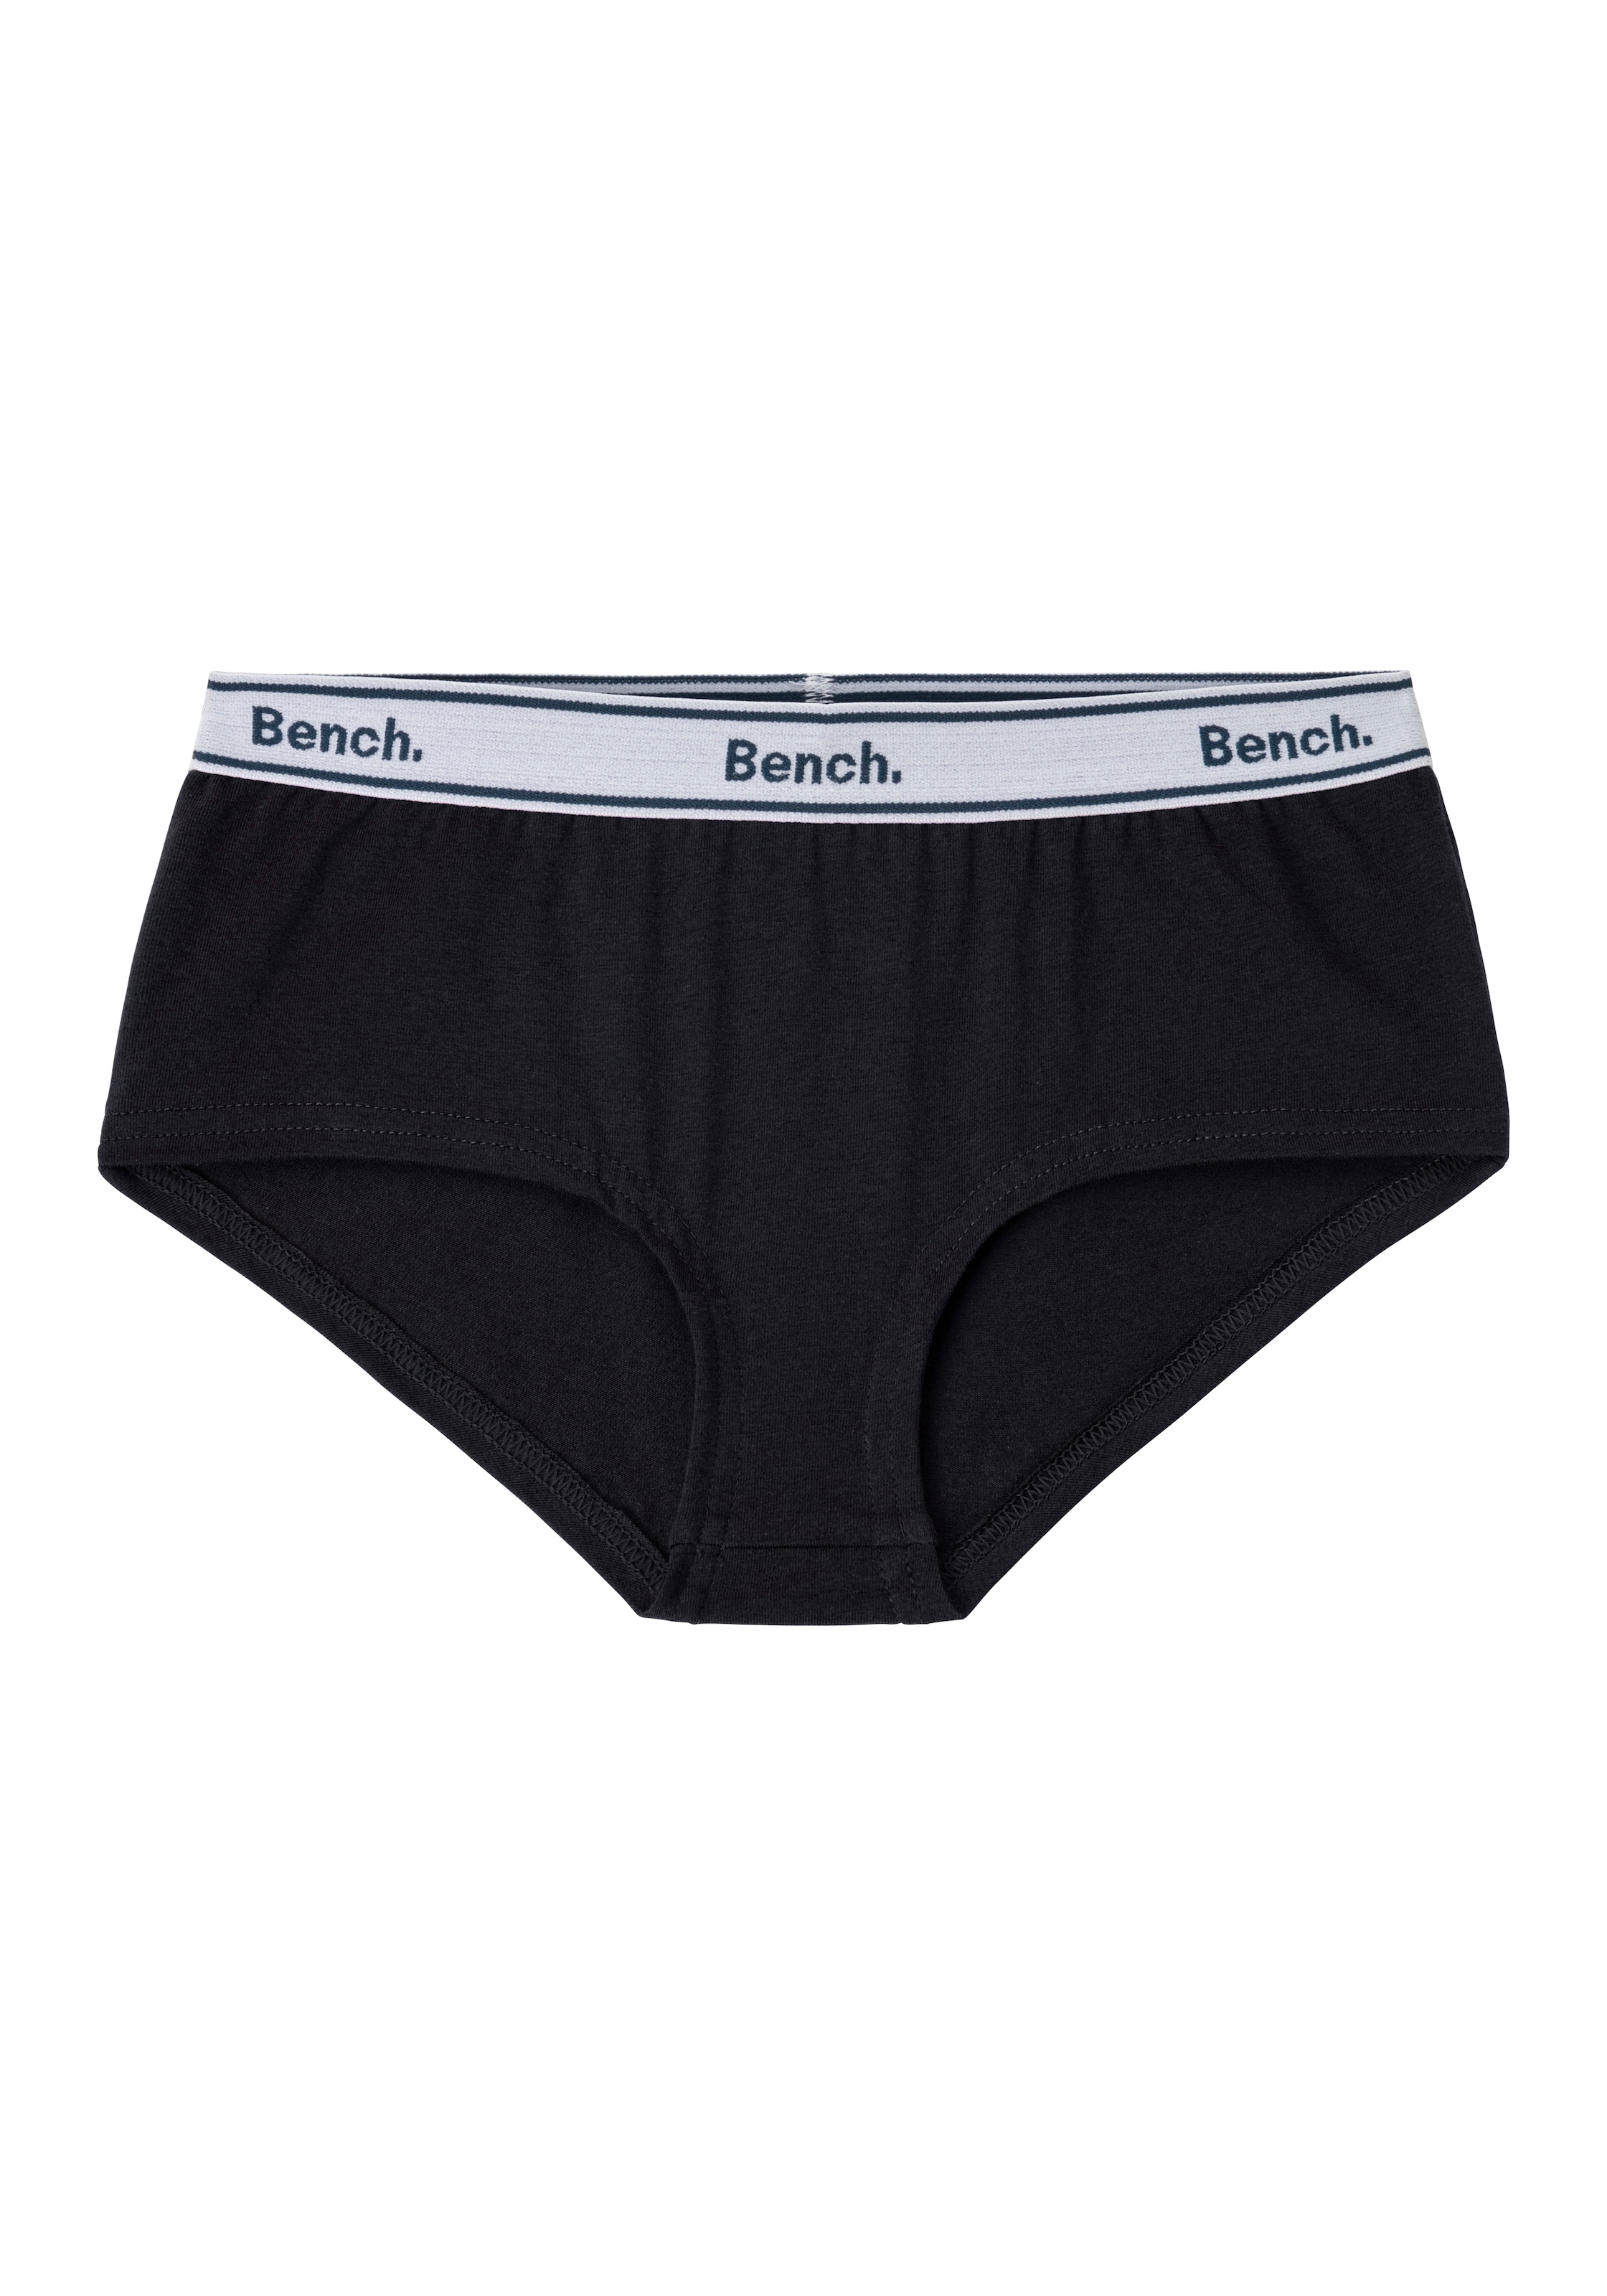 Bench. Panty, Logo bei mit 3 St.), ♕ (Packung, Webbund